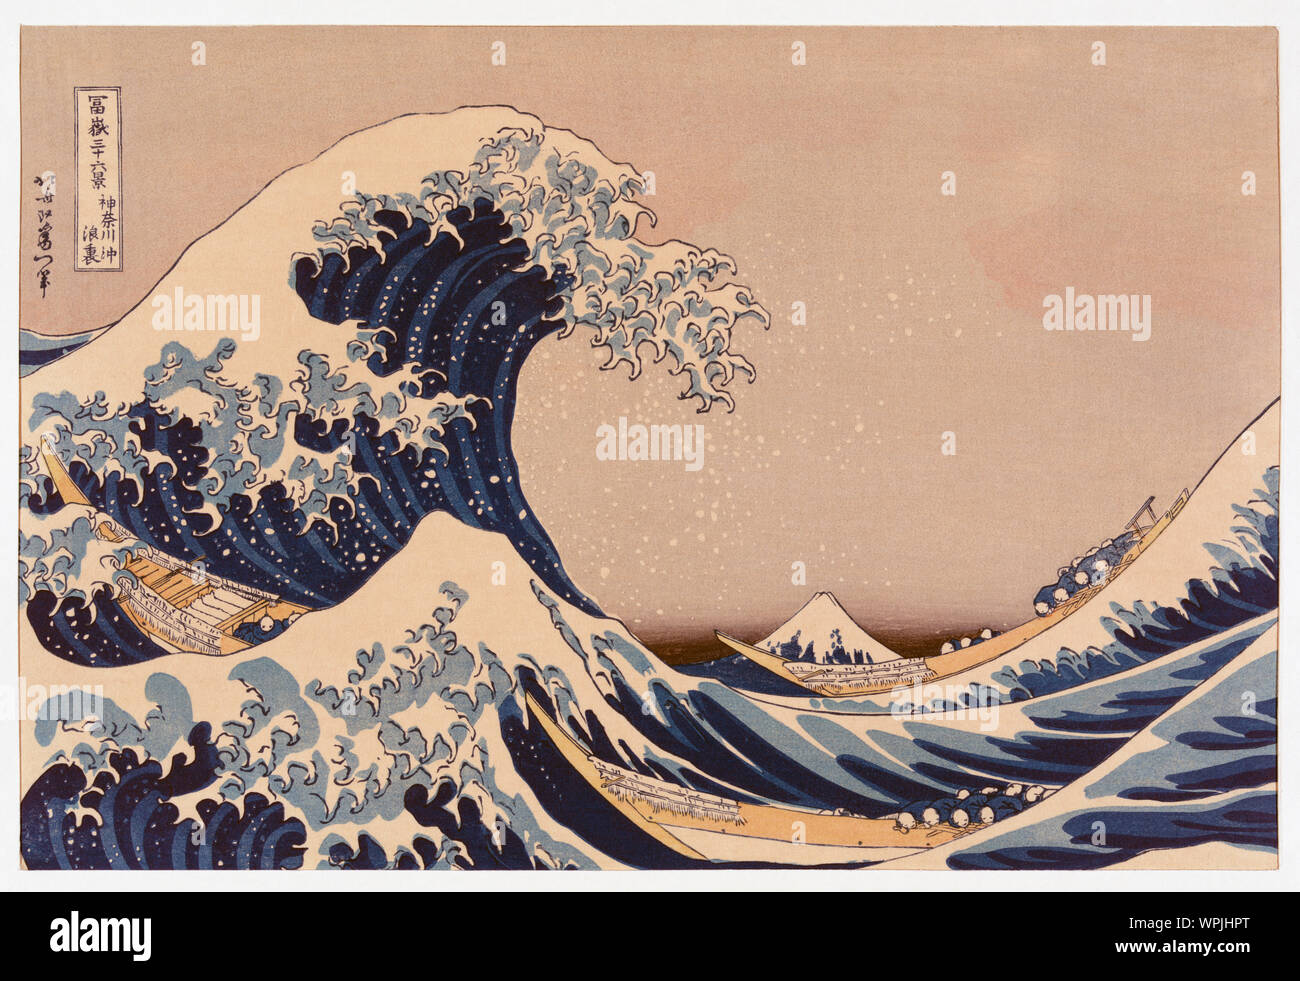 La gran ola de Kanagawa off, también conocida como la gran ola o simplemente la onda, después de un grabado en madera por el artista japonés ukiyo-e Katsushika Hokusai, 1760 - 1849. La gran ola de Kanagawa off se ha convertido en el más conocido de una serie de impresión conocido como treinta y seis vistas del Monte Fuji creado por Hokusai a principios de los 1830's. Foto de stock